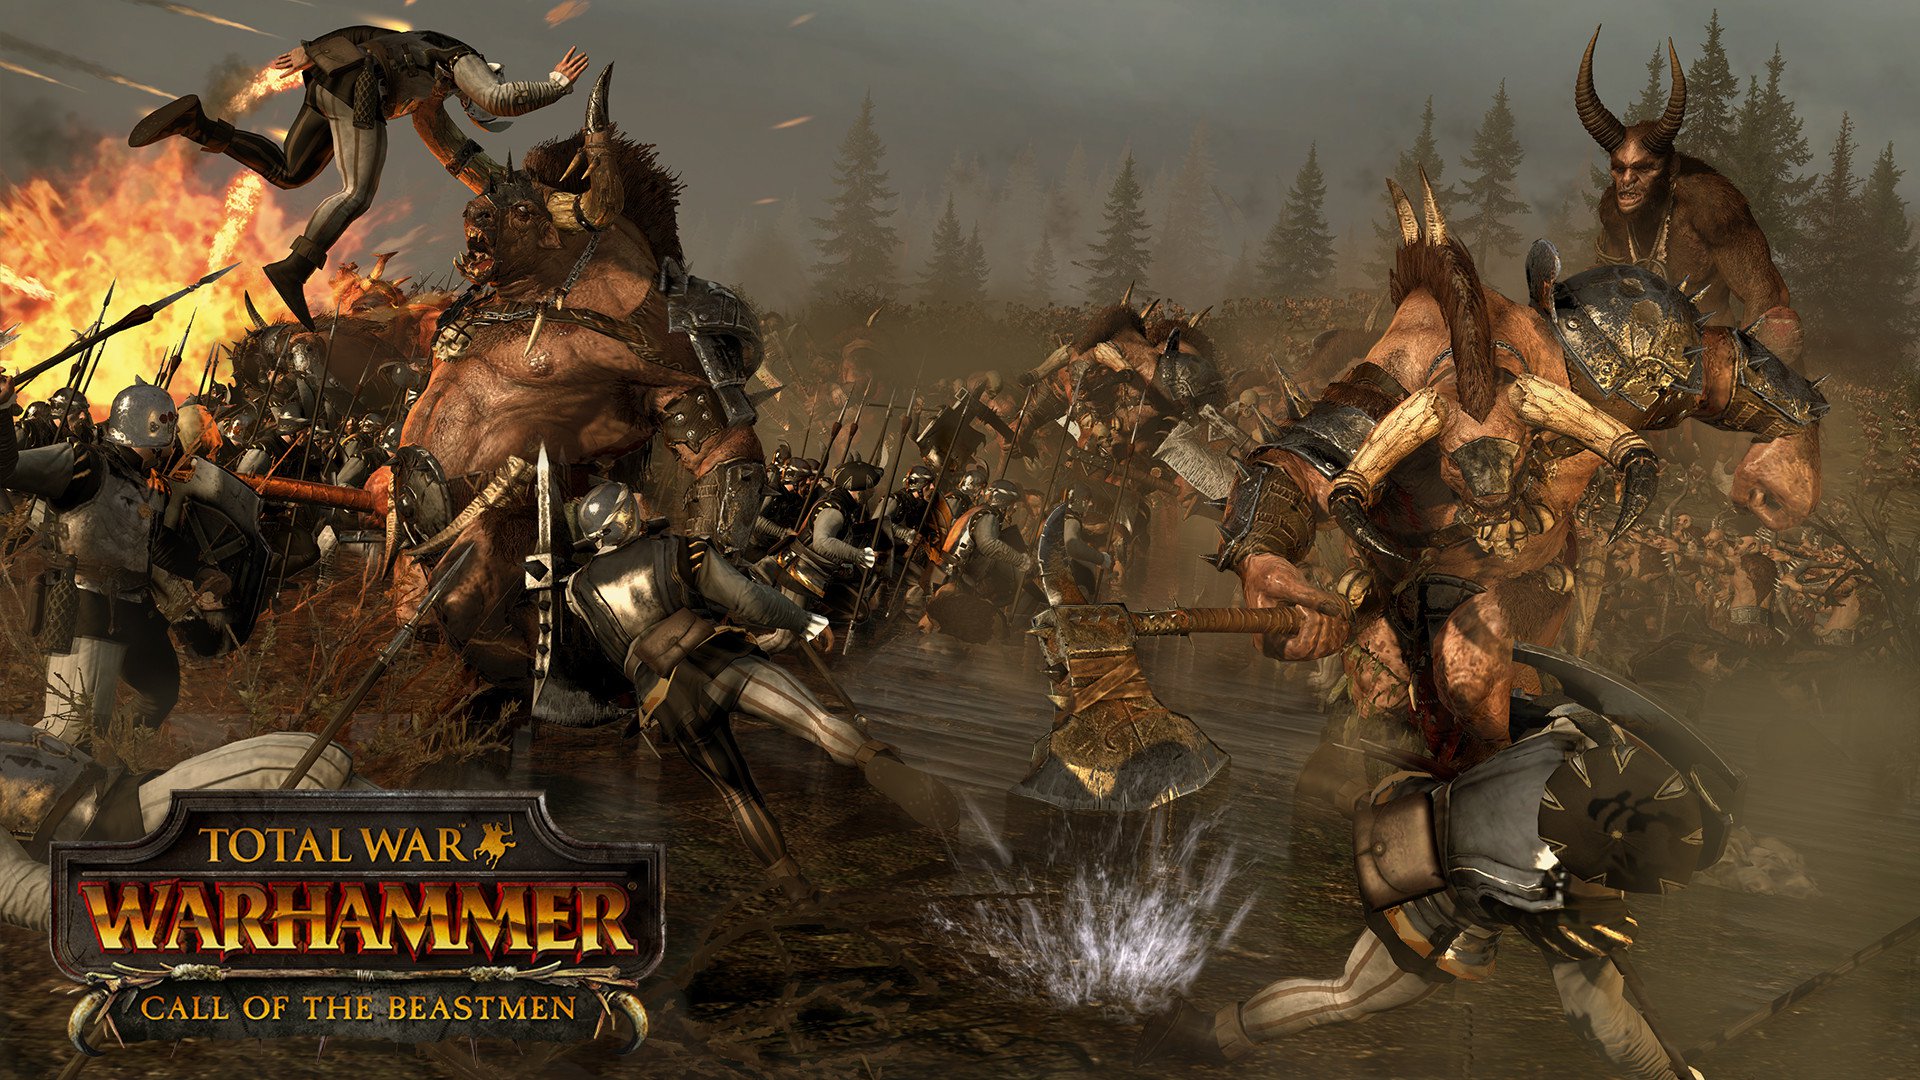 Total War WARHAMMER Call of the Beastmen DLC 4